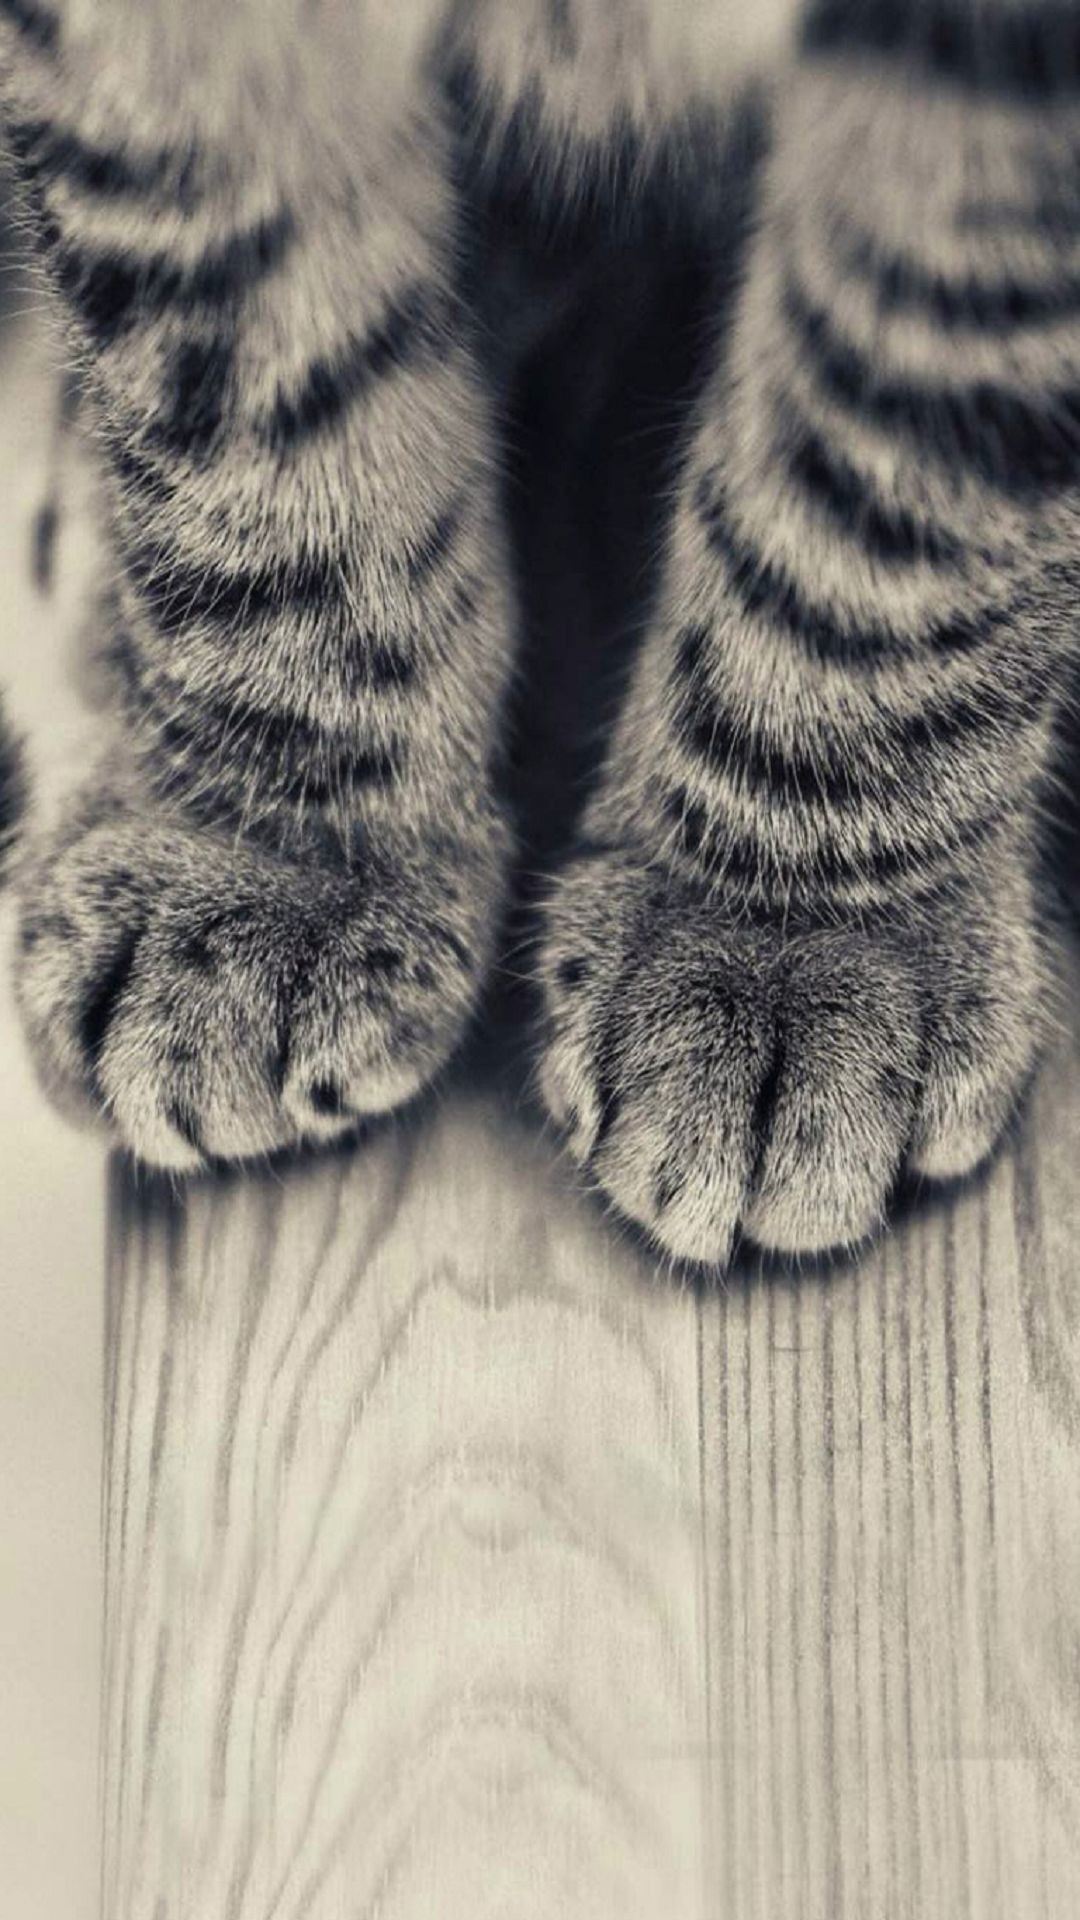 Striped Kitten Legs Wooden Floor iPhone 6 Plus HD Wallpaper